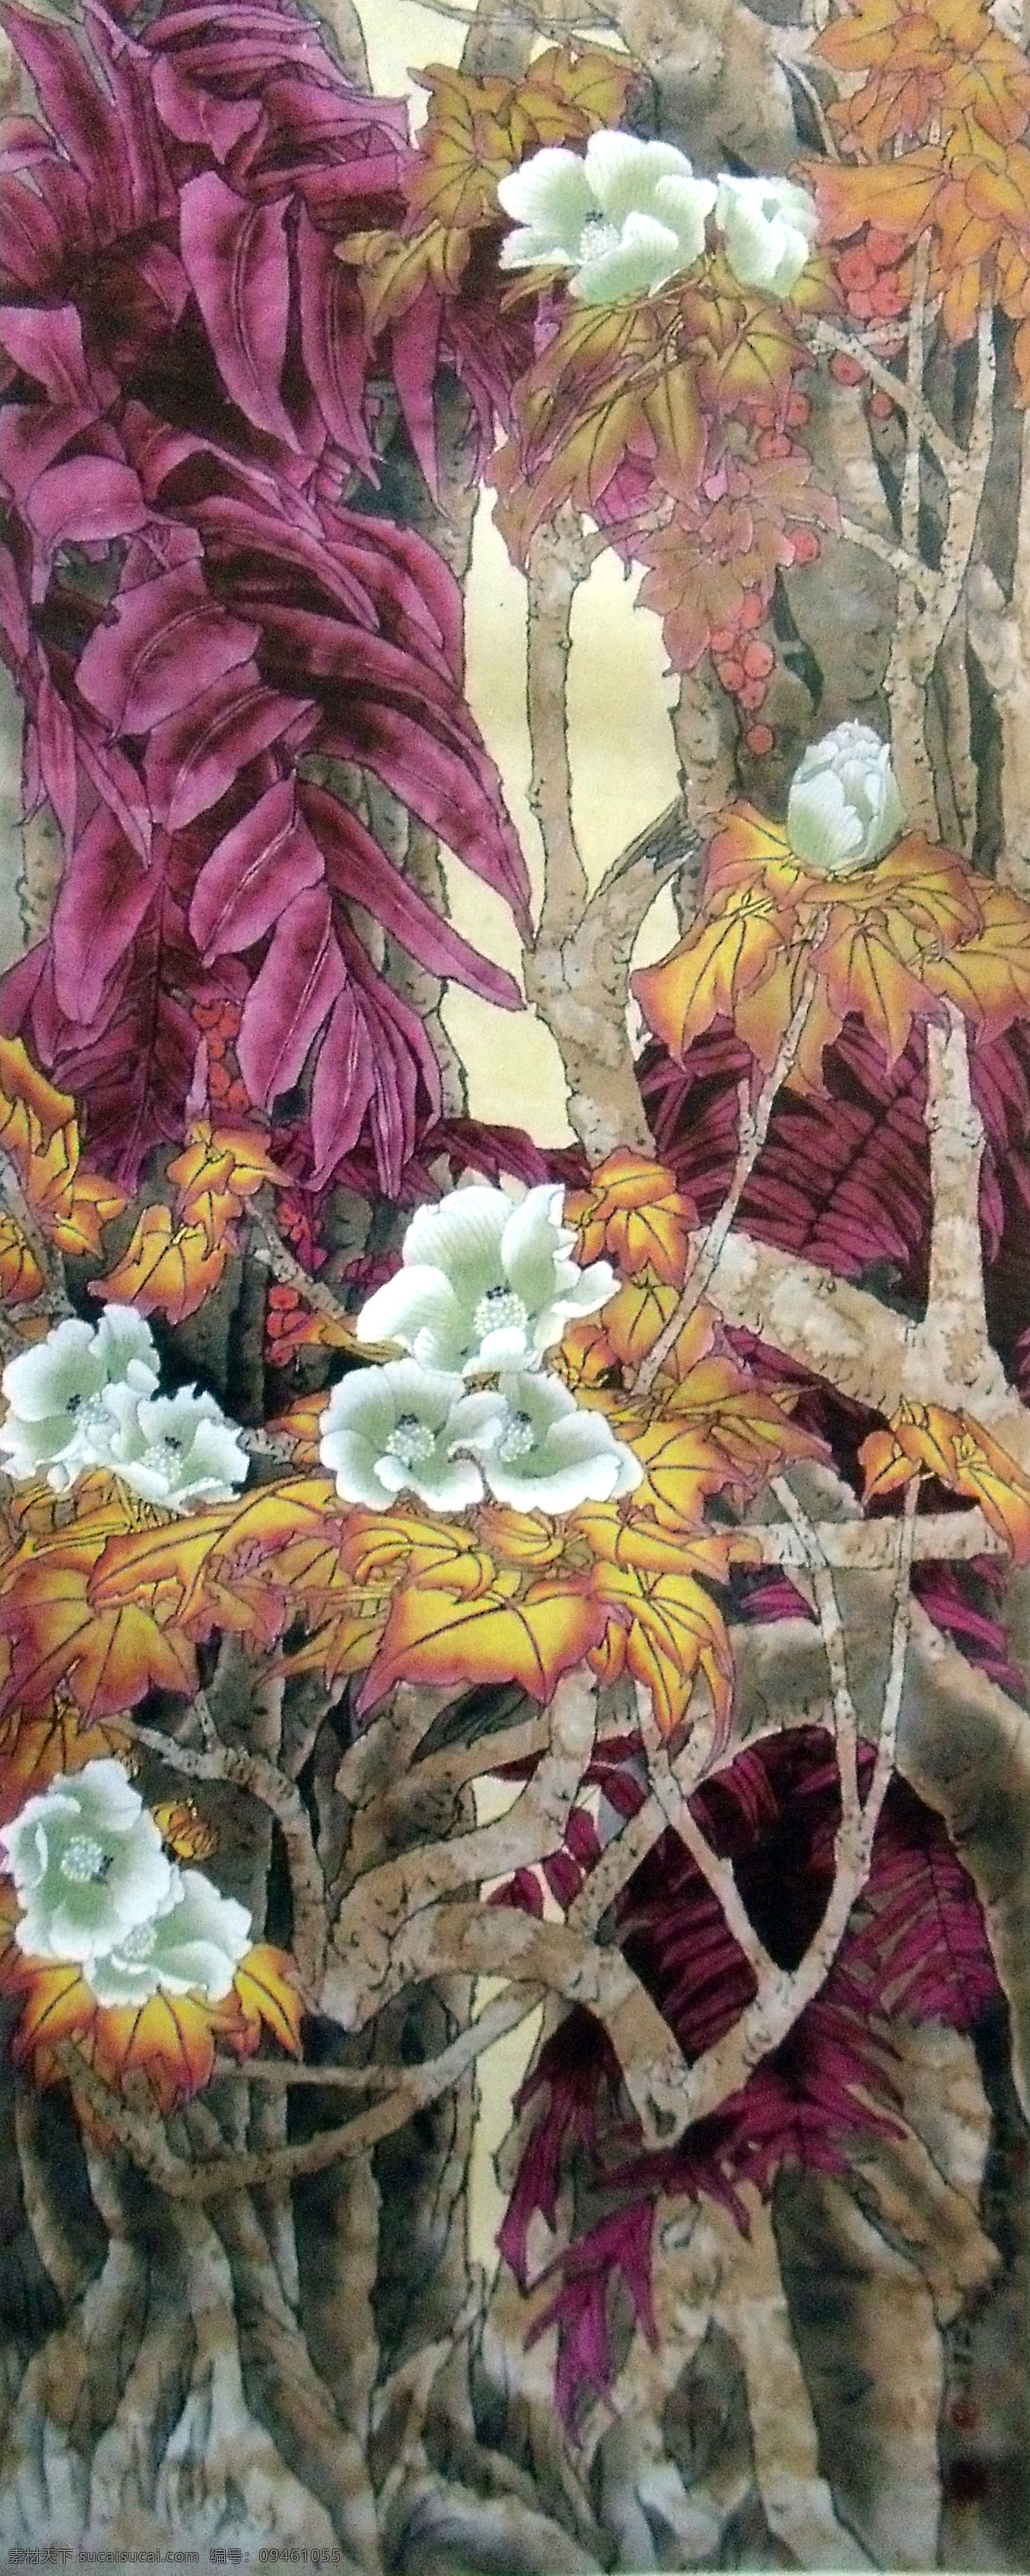 植物 花卉图片 水墨画 名画 水墨花卉植物 国画 中国画 绘画艺术 装饰画 挂画 书画文字 文化艺术